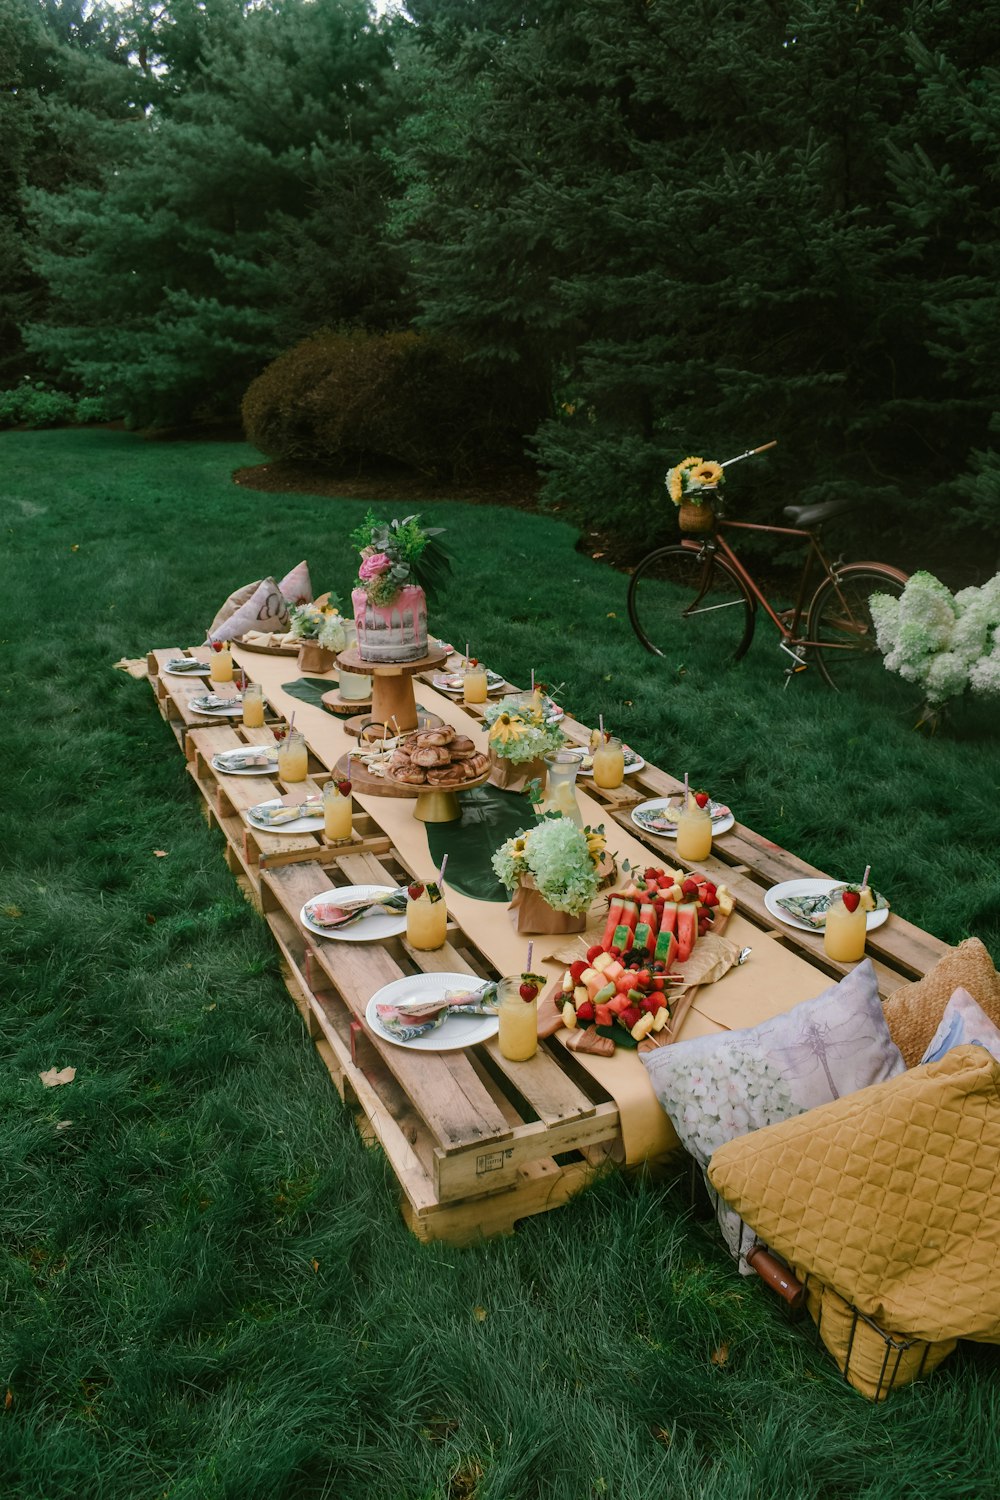 Mesa de picnic de madera marrón en campo de hierba verde durante el día